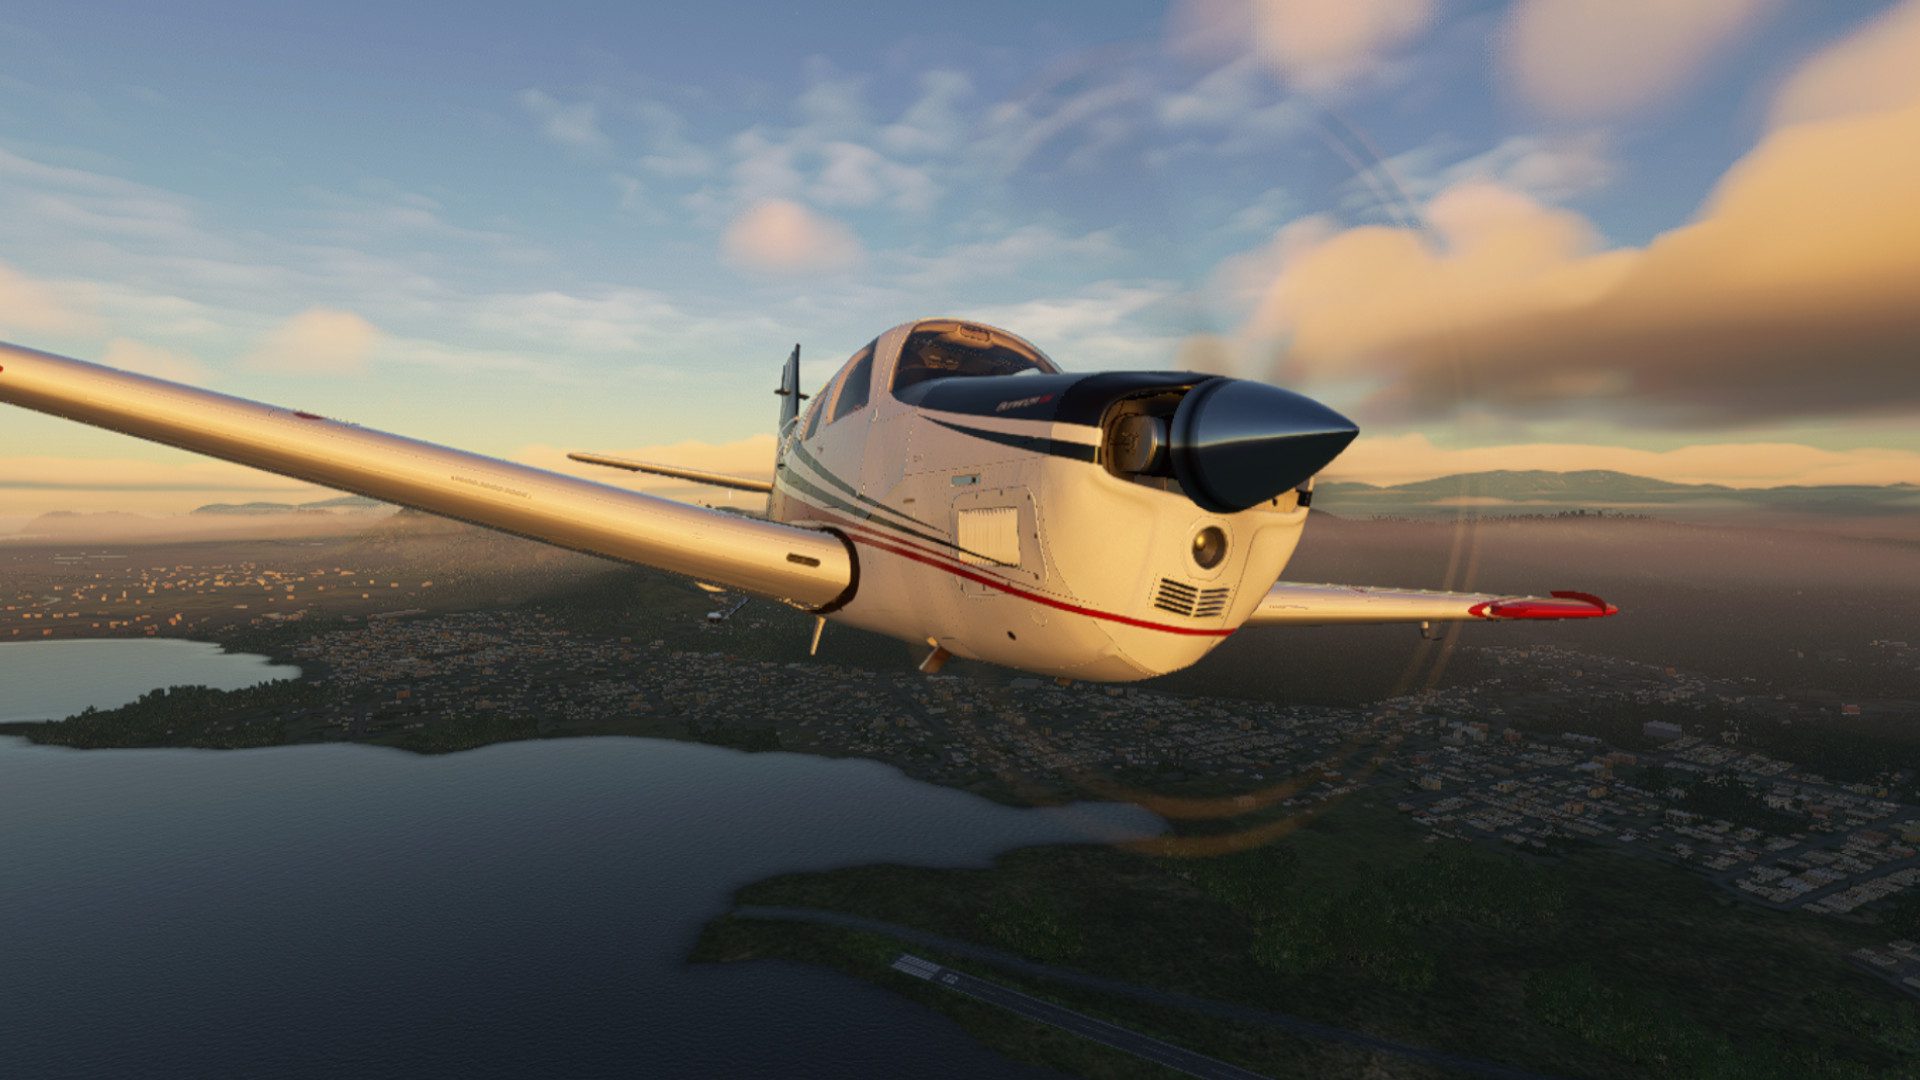 Microsoft Flight Simulator anunció la expansión de Top Gun y un